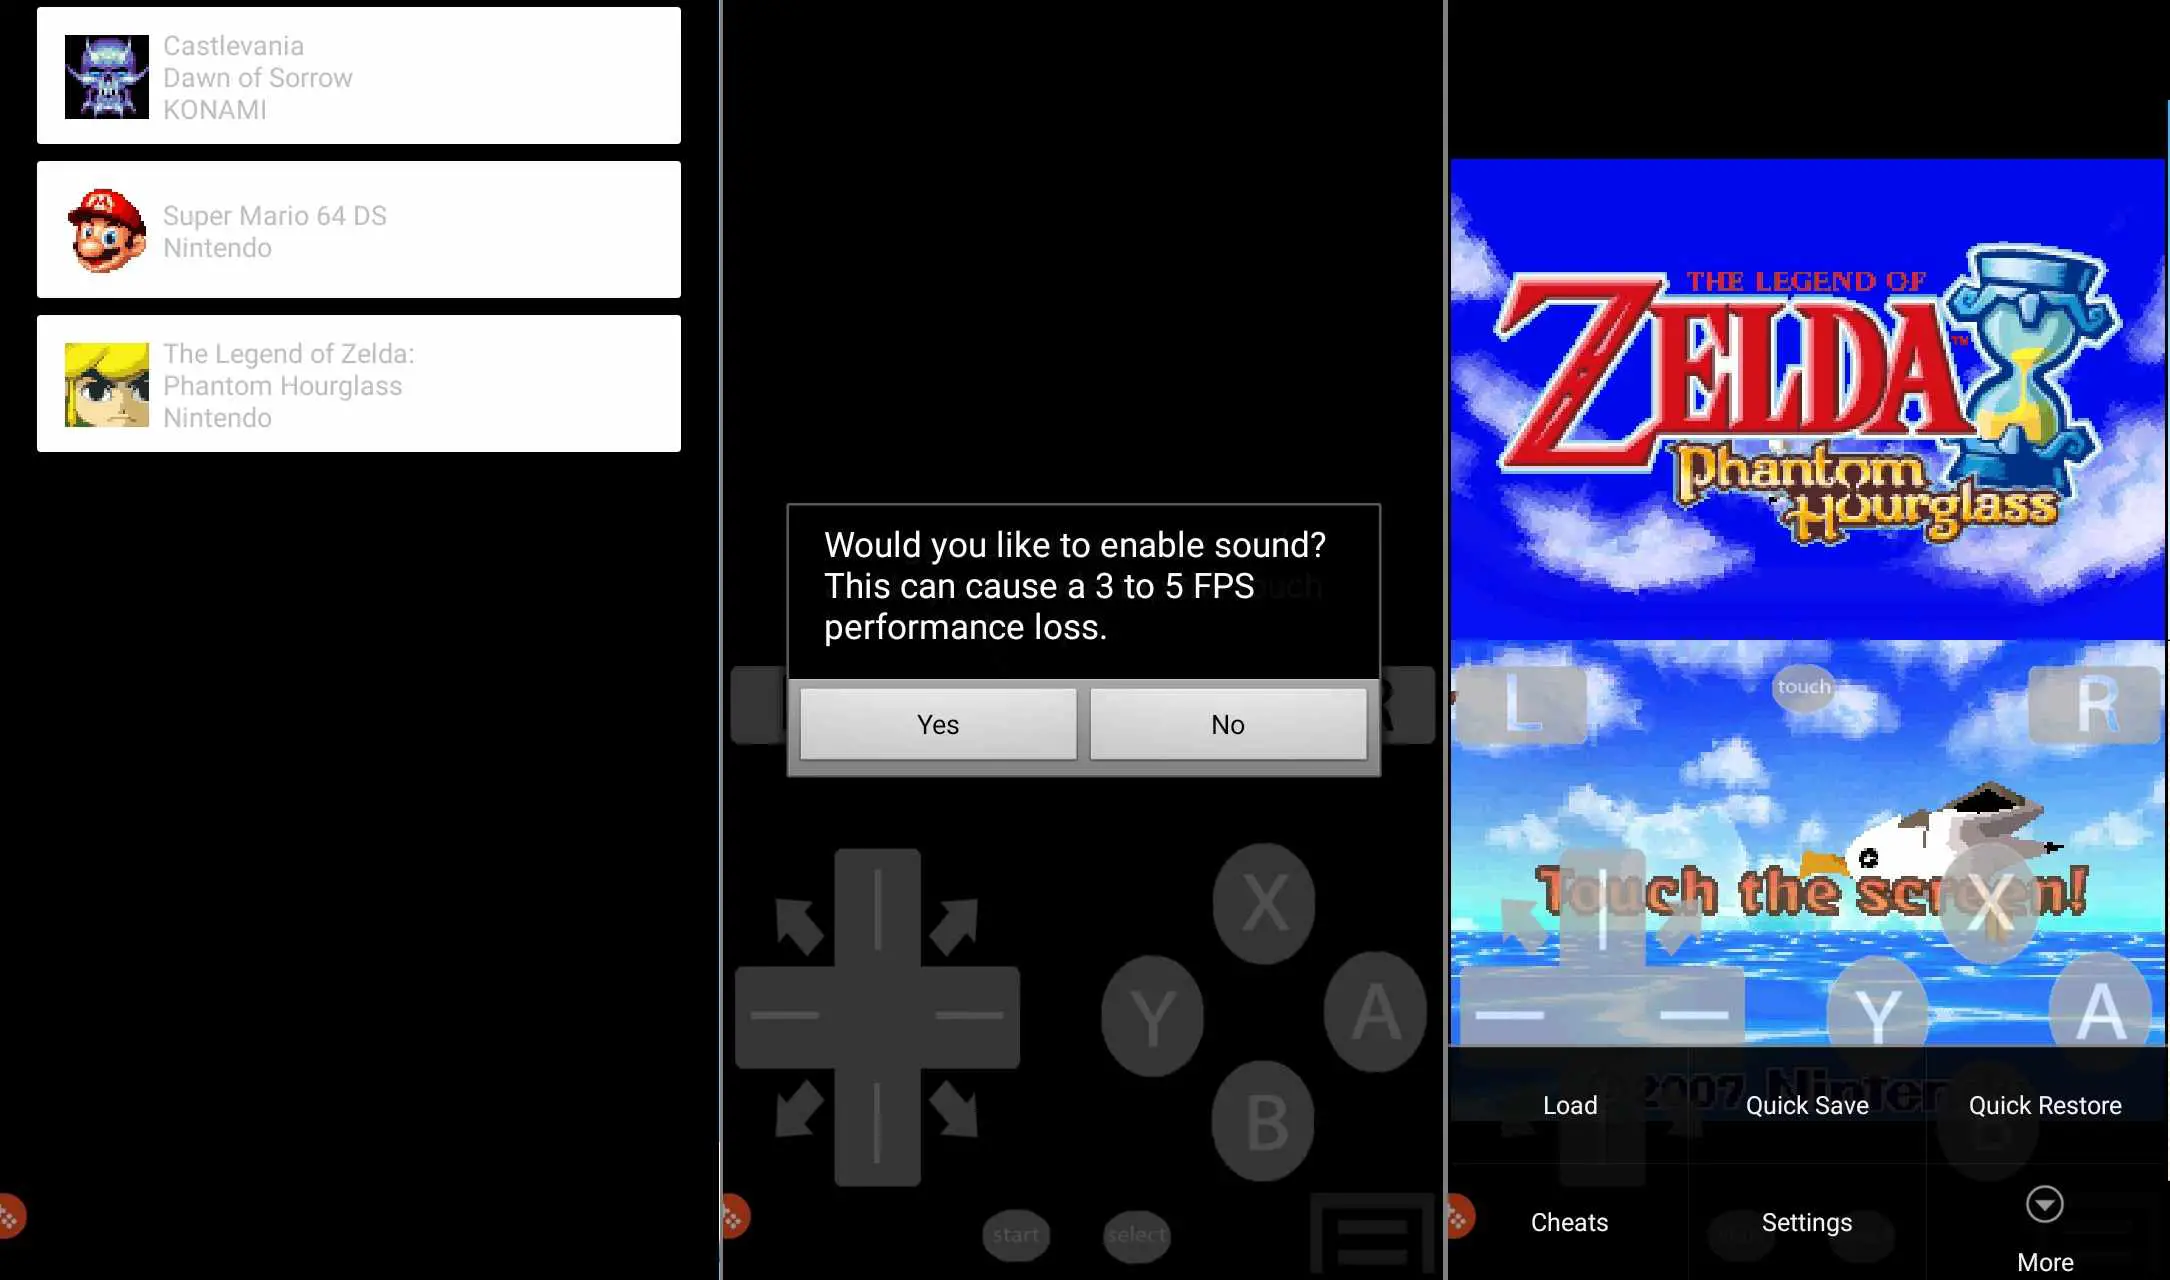 Zelda: Phantom Hour Glass em execução no emulador EmuBox DS para Android